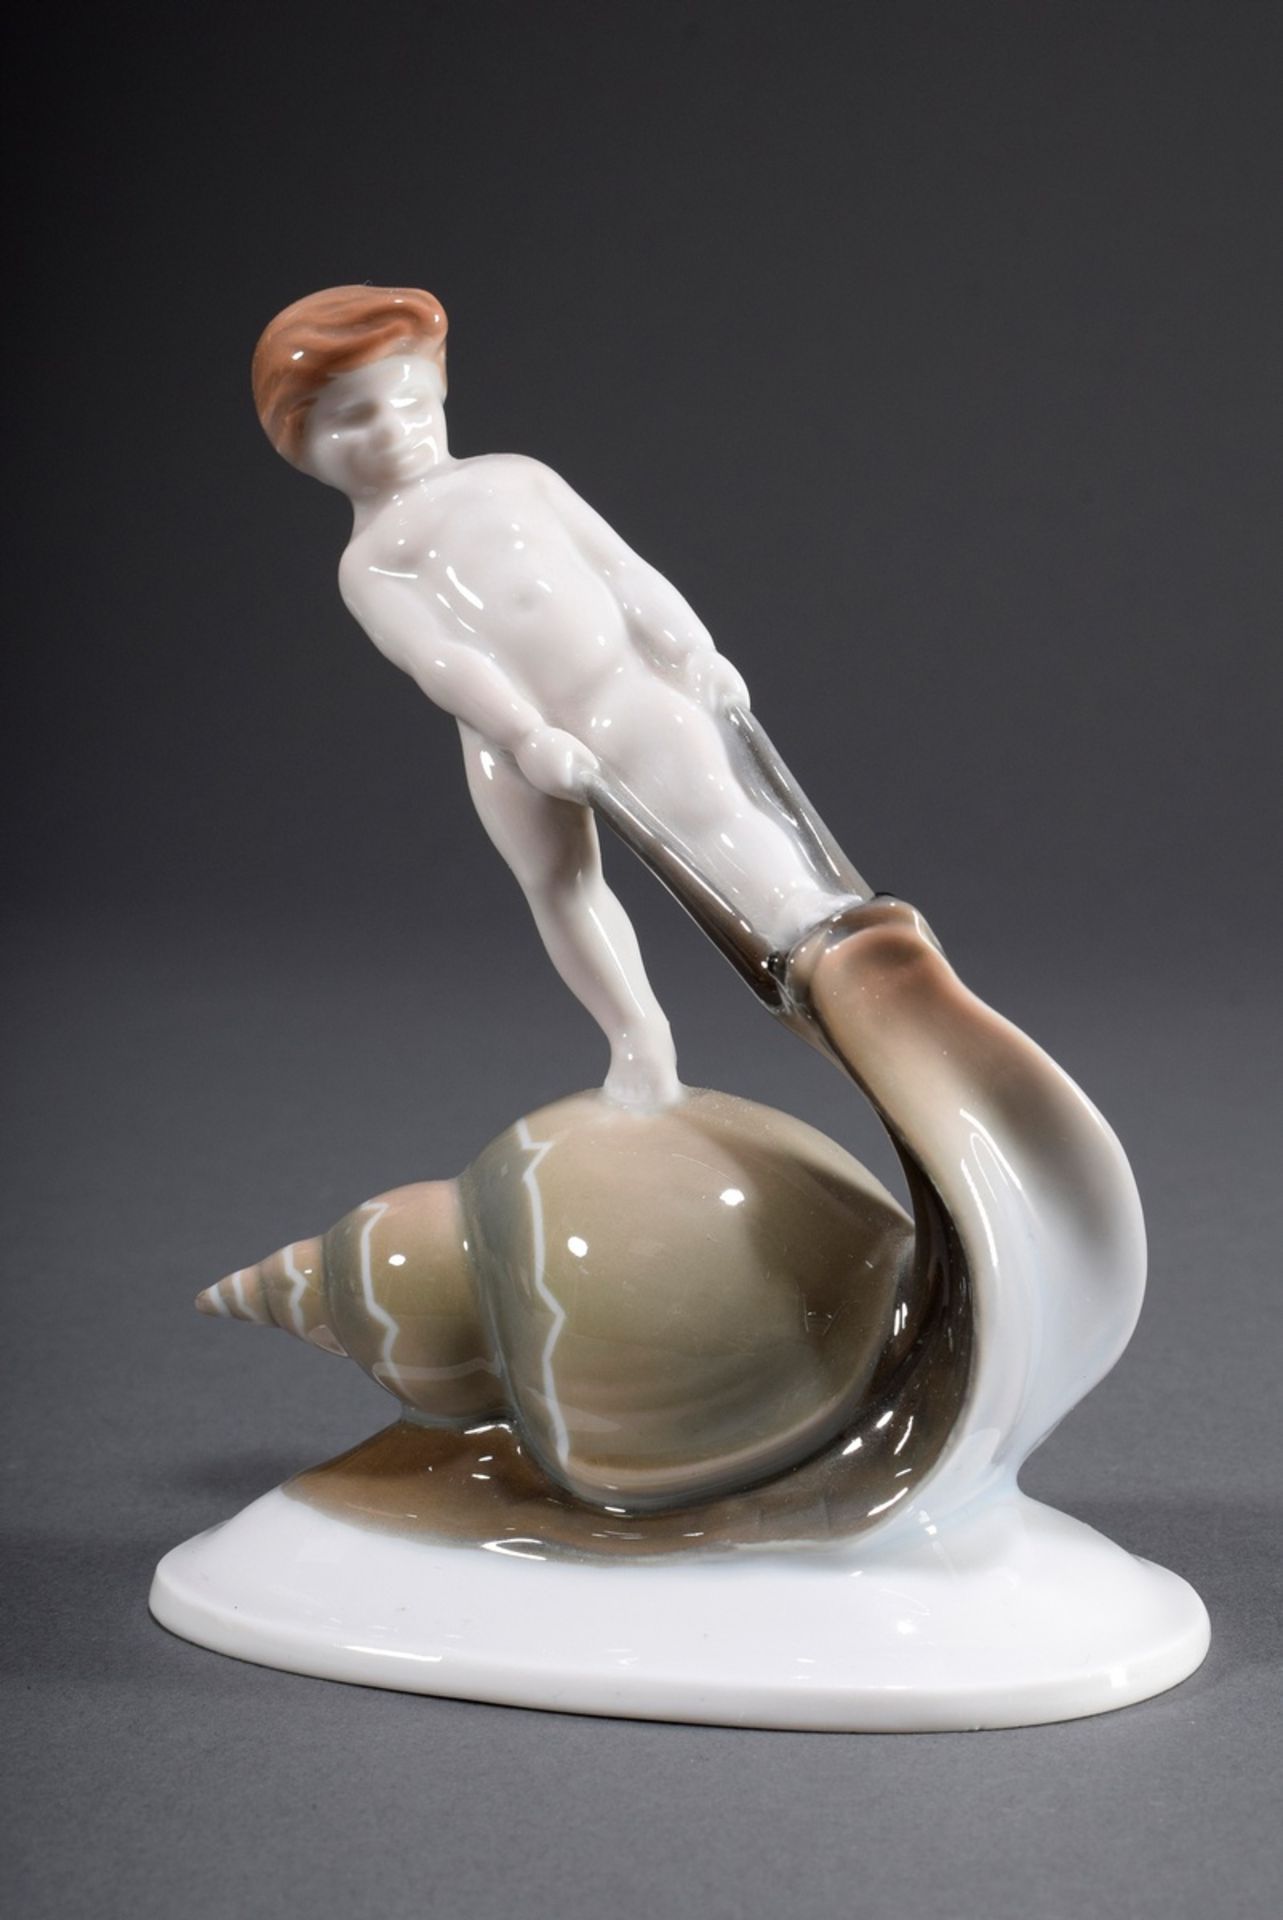 Rosenthal Figur "Schneckenreiter", dezent farbig | Rosenthal figurine "Snail rider", coloured paint